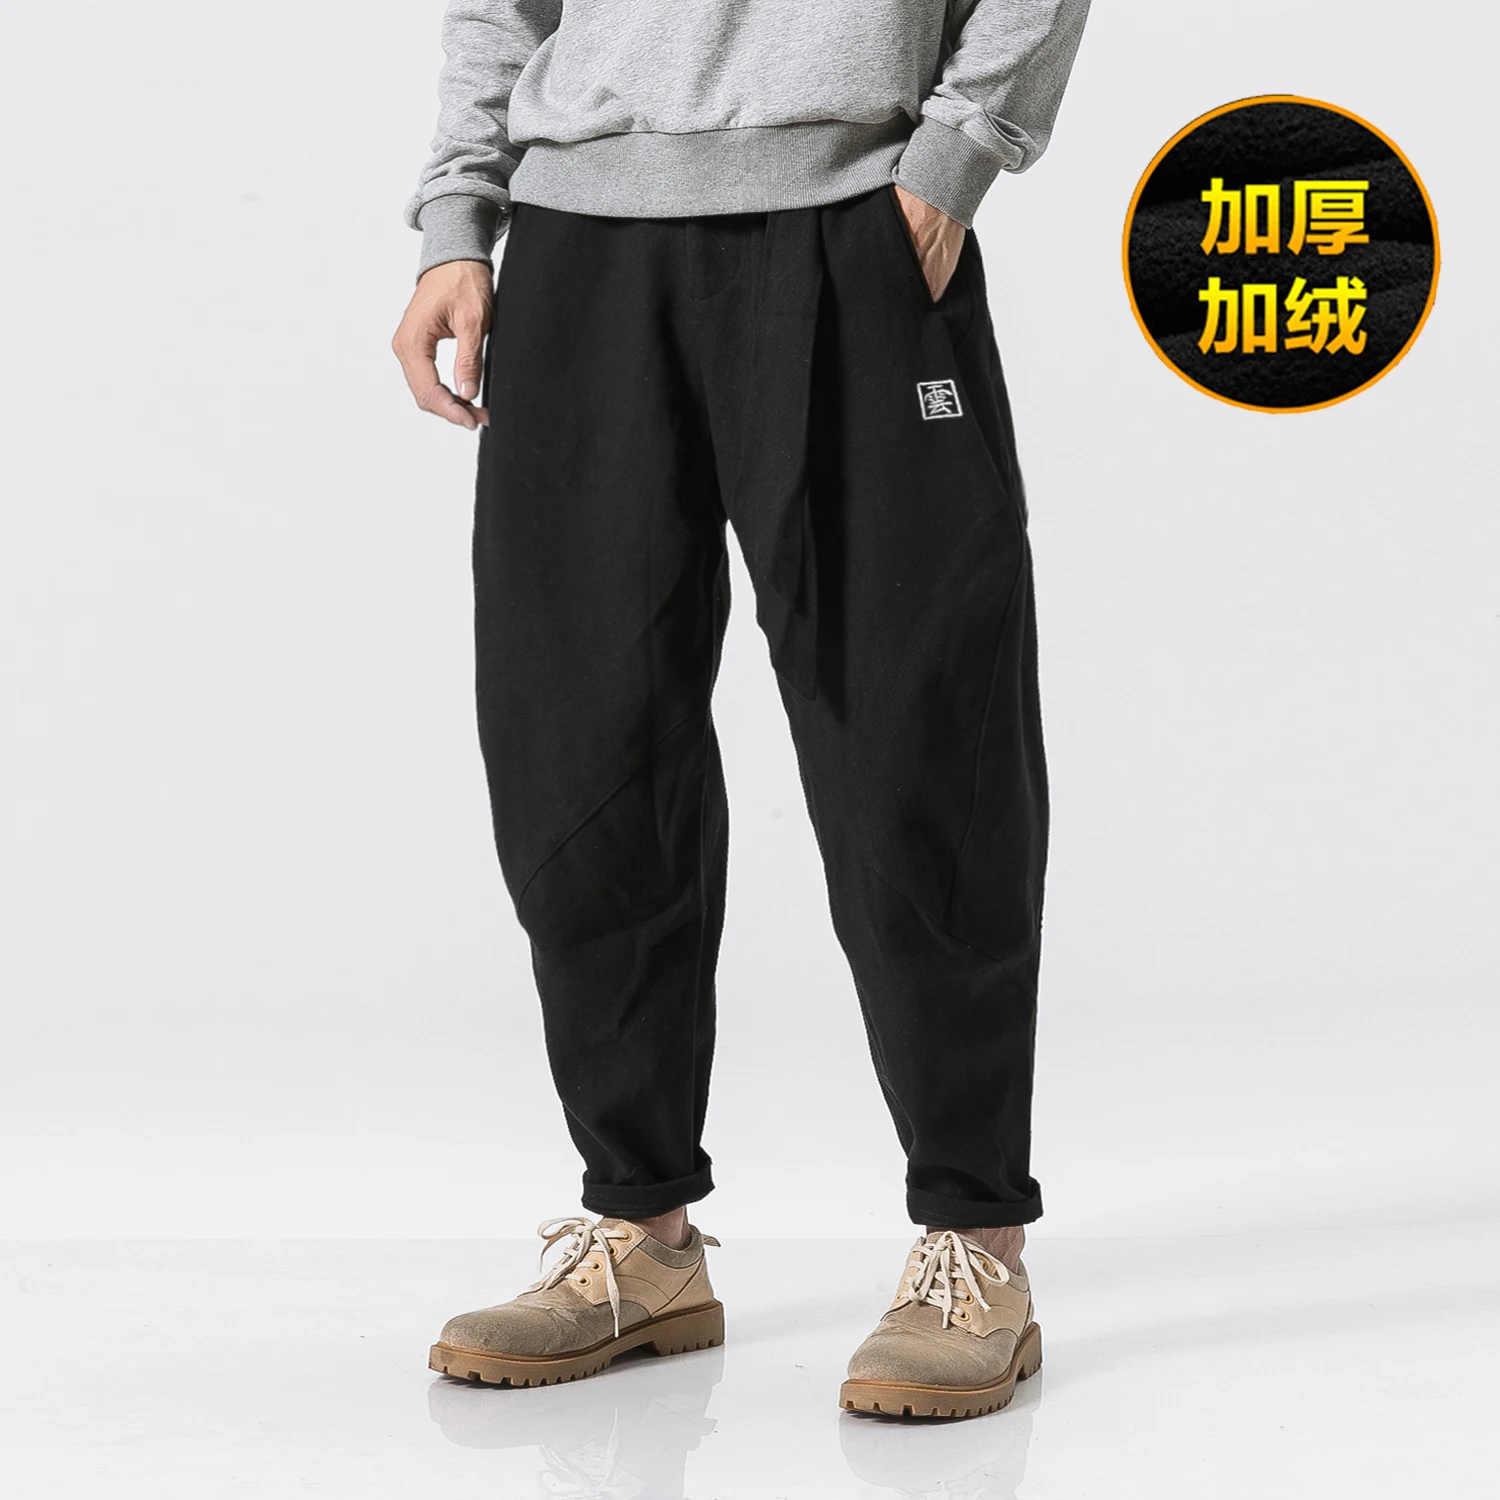 Sinicism магазин японские повседневные хлопковые льняные брюки мужские шаровары Мужские Jogger брюки китайские мешковатые леггинсы одежда - Цвет: Black(AsianSize)